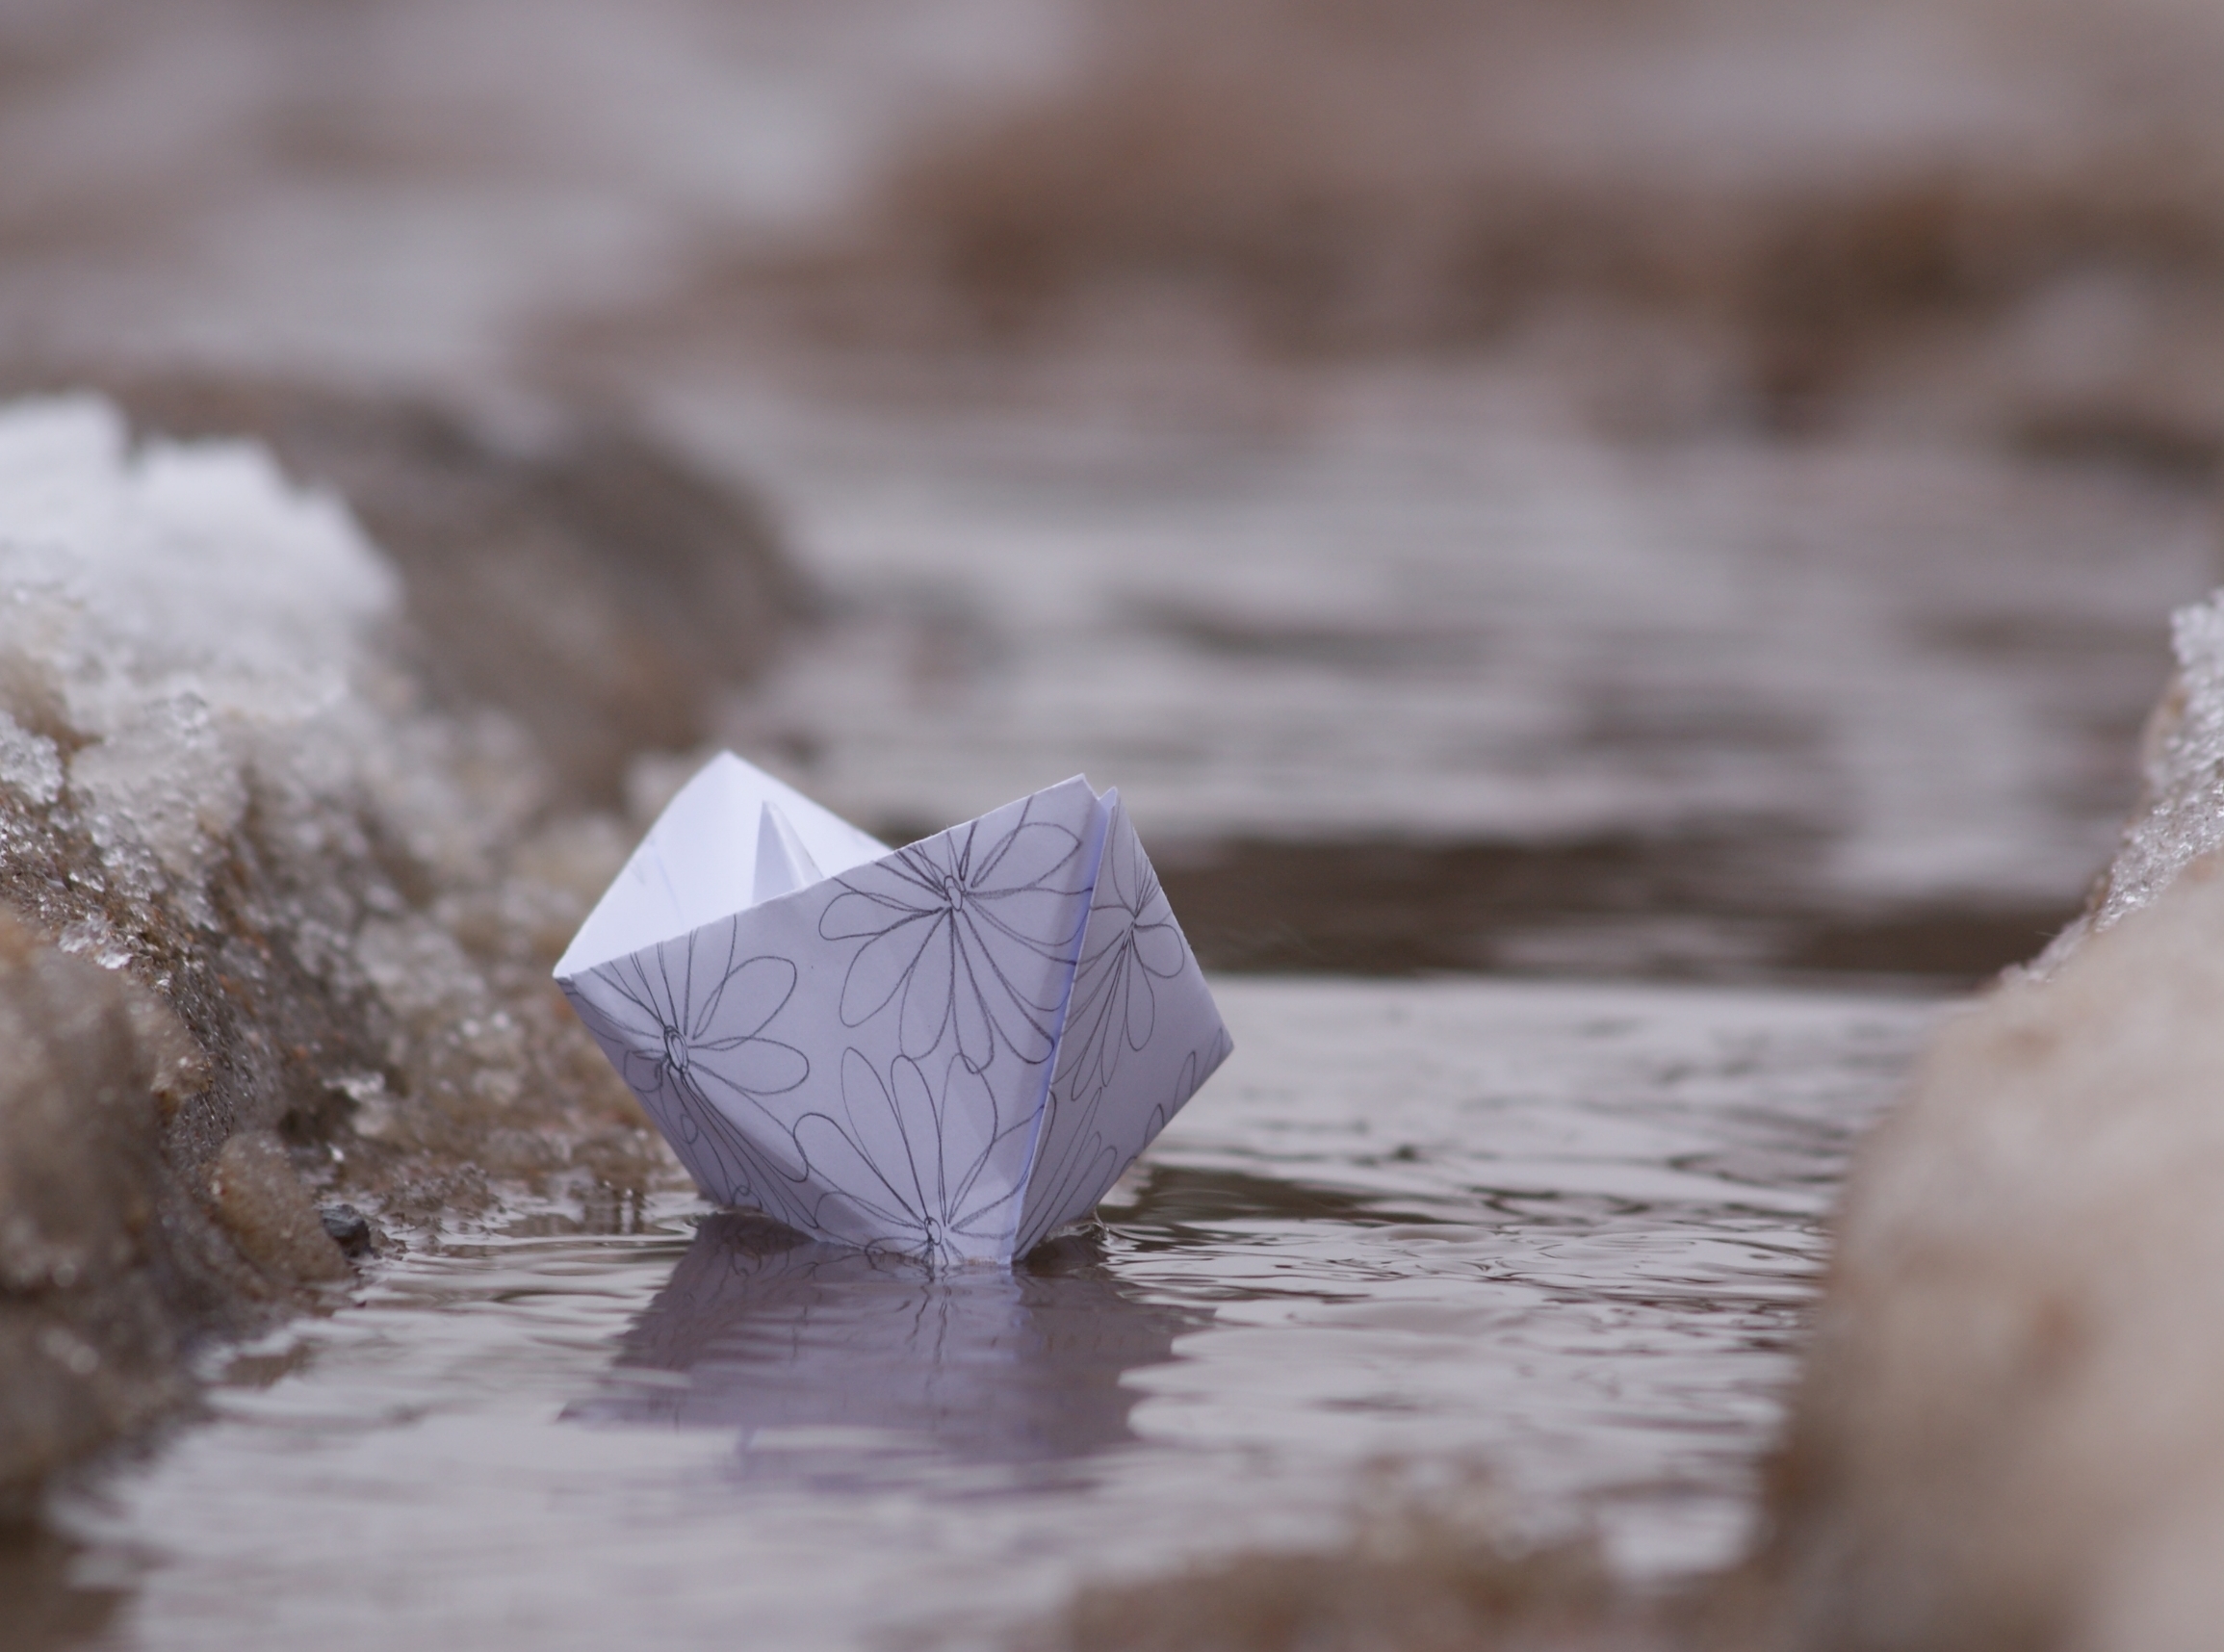 Кораблик из бумаги я по ручью. Бумажный кораблик. Бумажный кораблик в ручье. Бумажный кораблик весной. Весенний бумажный кораблик.